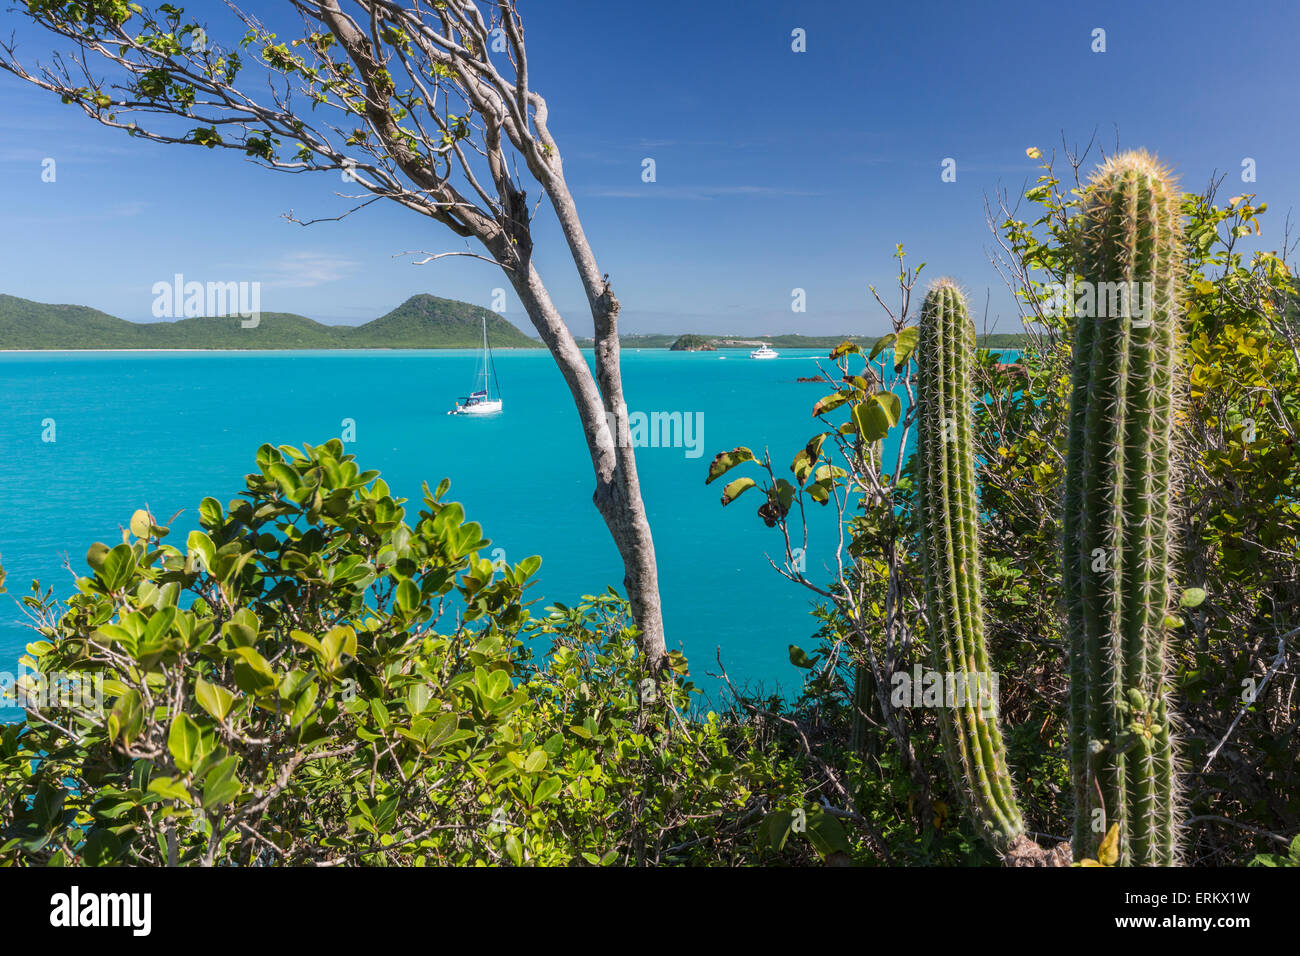 Panoramablick auf Spearn Bucht von einem Hügel mit Blick auf die ruhige Lagune, besucht von vielen Segelbooten, St. Johns, Antigua Stockfoto